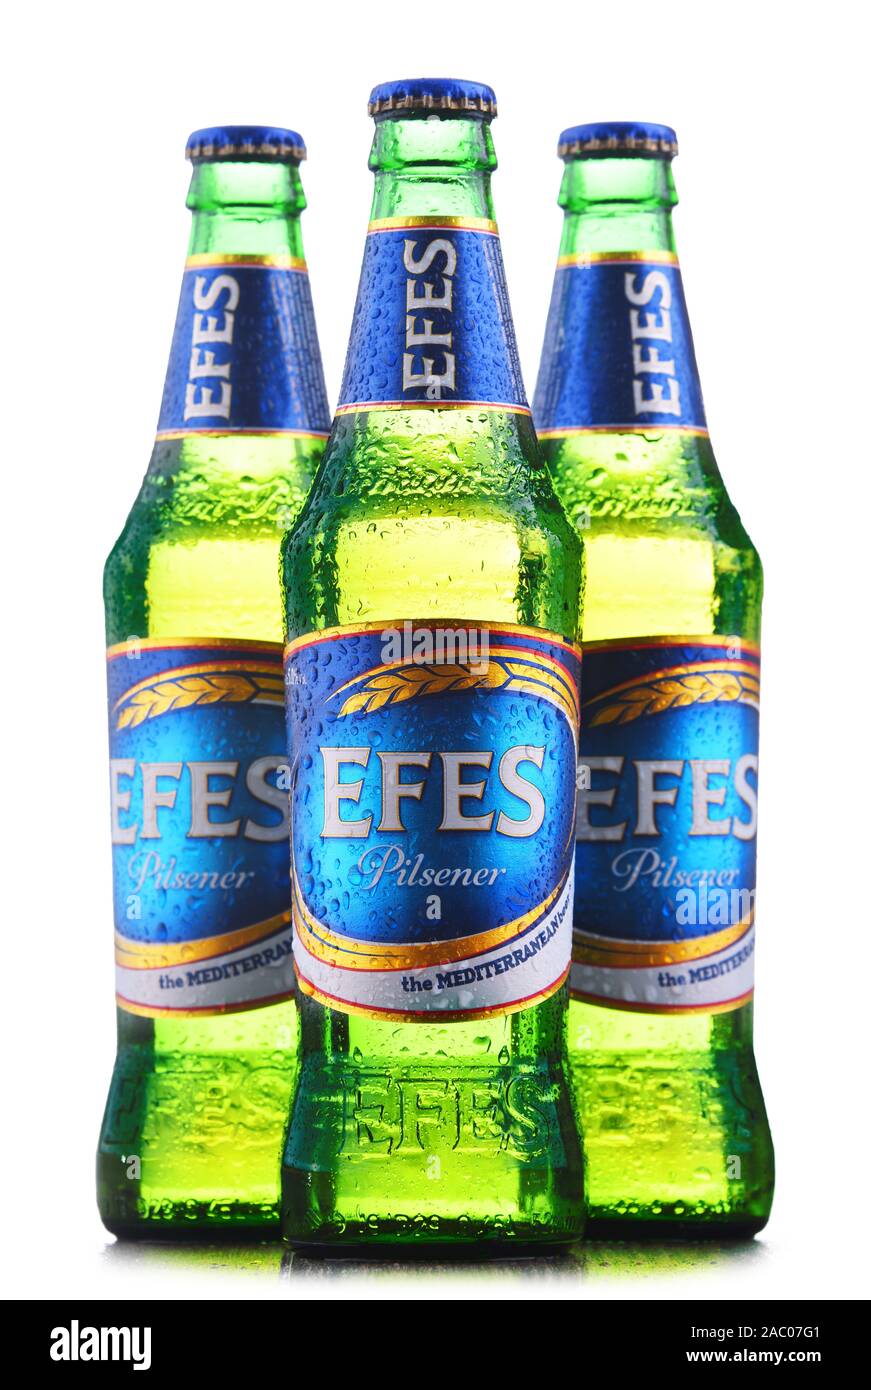 POZNAN, Polen - 22.August 2019: Flaschen EFES Pilsener Bier, das Flaggschiff der Anadolu Efes Unternehmen mit Sitz in Istanbul, Türkei Stockfoto